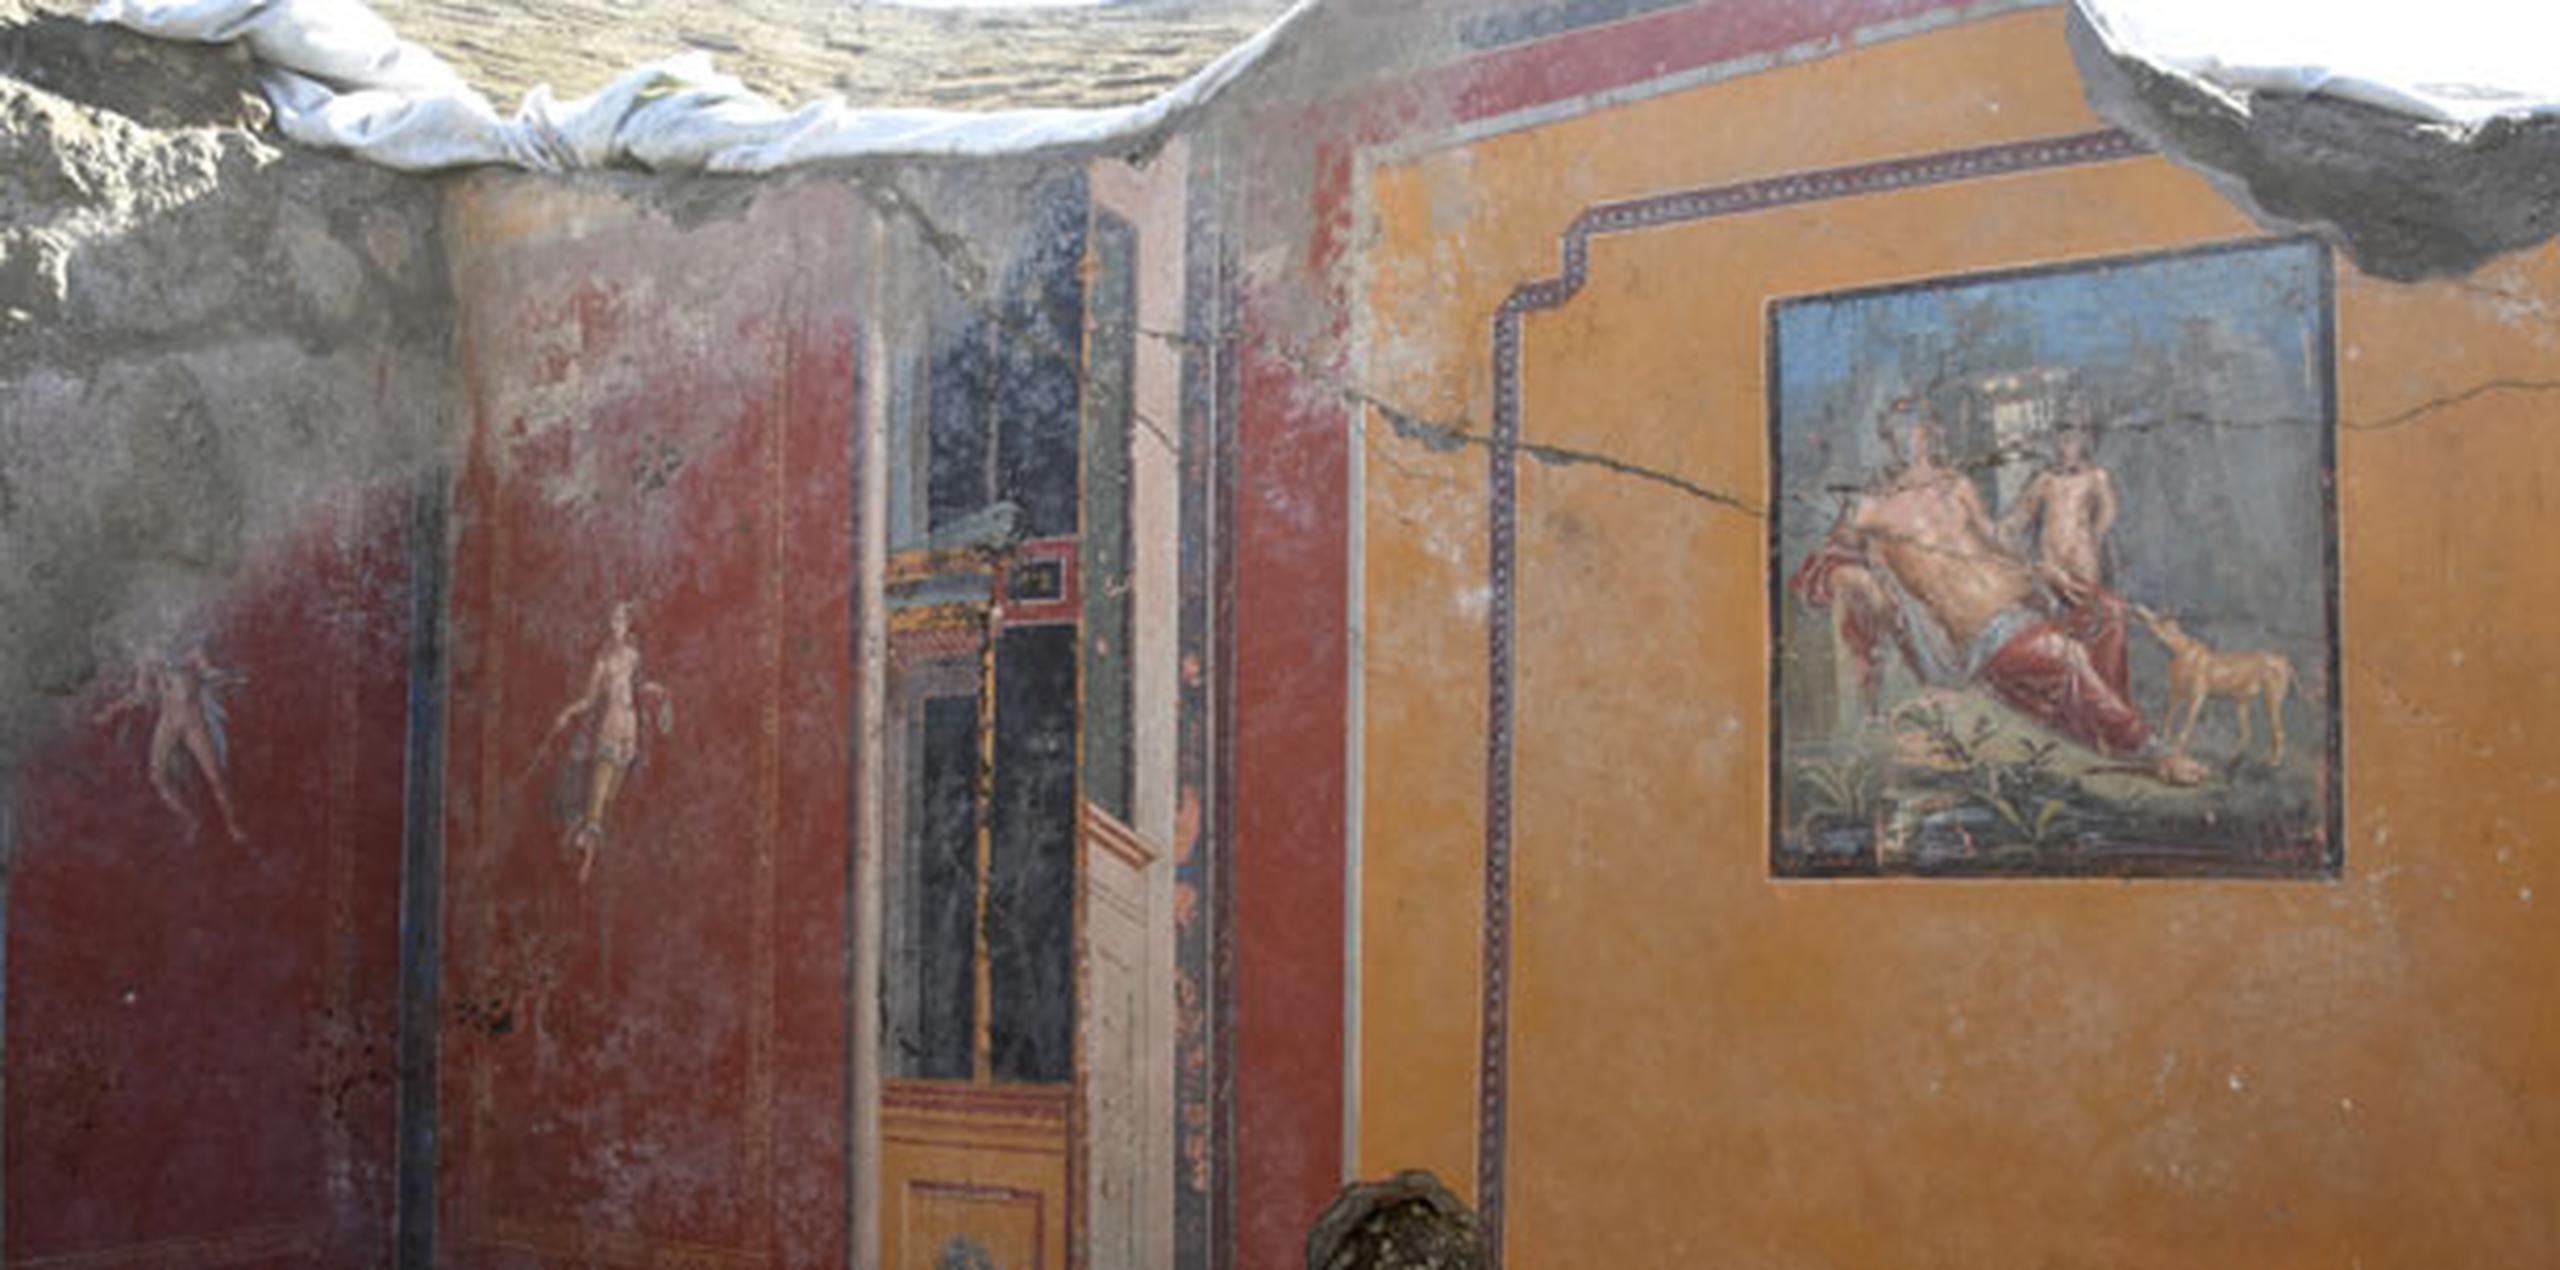 La obra se encuentra en el atrio de la misma casa donde a fines del año pasado se descubrió un fresco que representa la seducción de la mujer mortal Leda por el rey de los dioses Zeus. (AP)